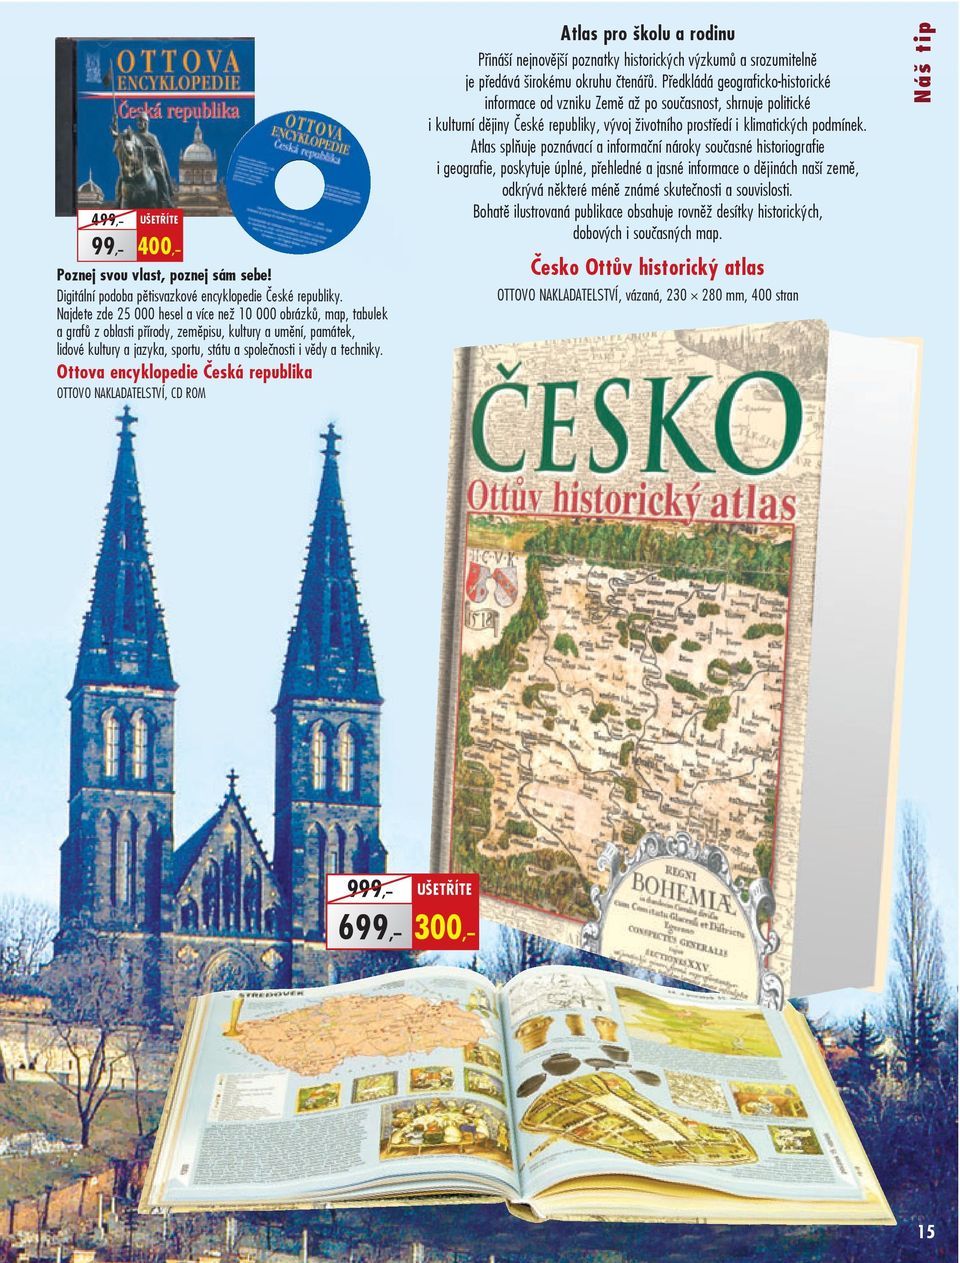 Ottova encyklopedie Česká republika OTTOVO NAKLADATELSTVÍ, CD ROM Atlas pro školu a rodinu Přináší nejnovější poznatky historických výzkumů a srozumitelně je předává širokému okruhu čtenářů.